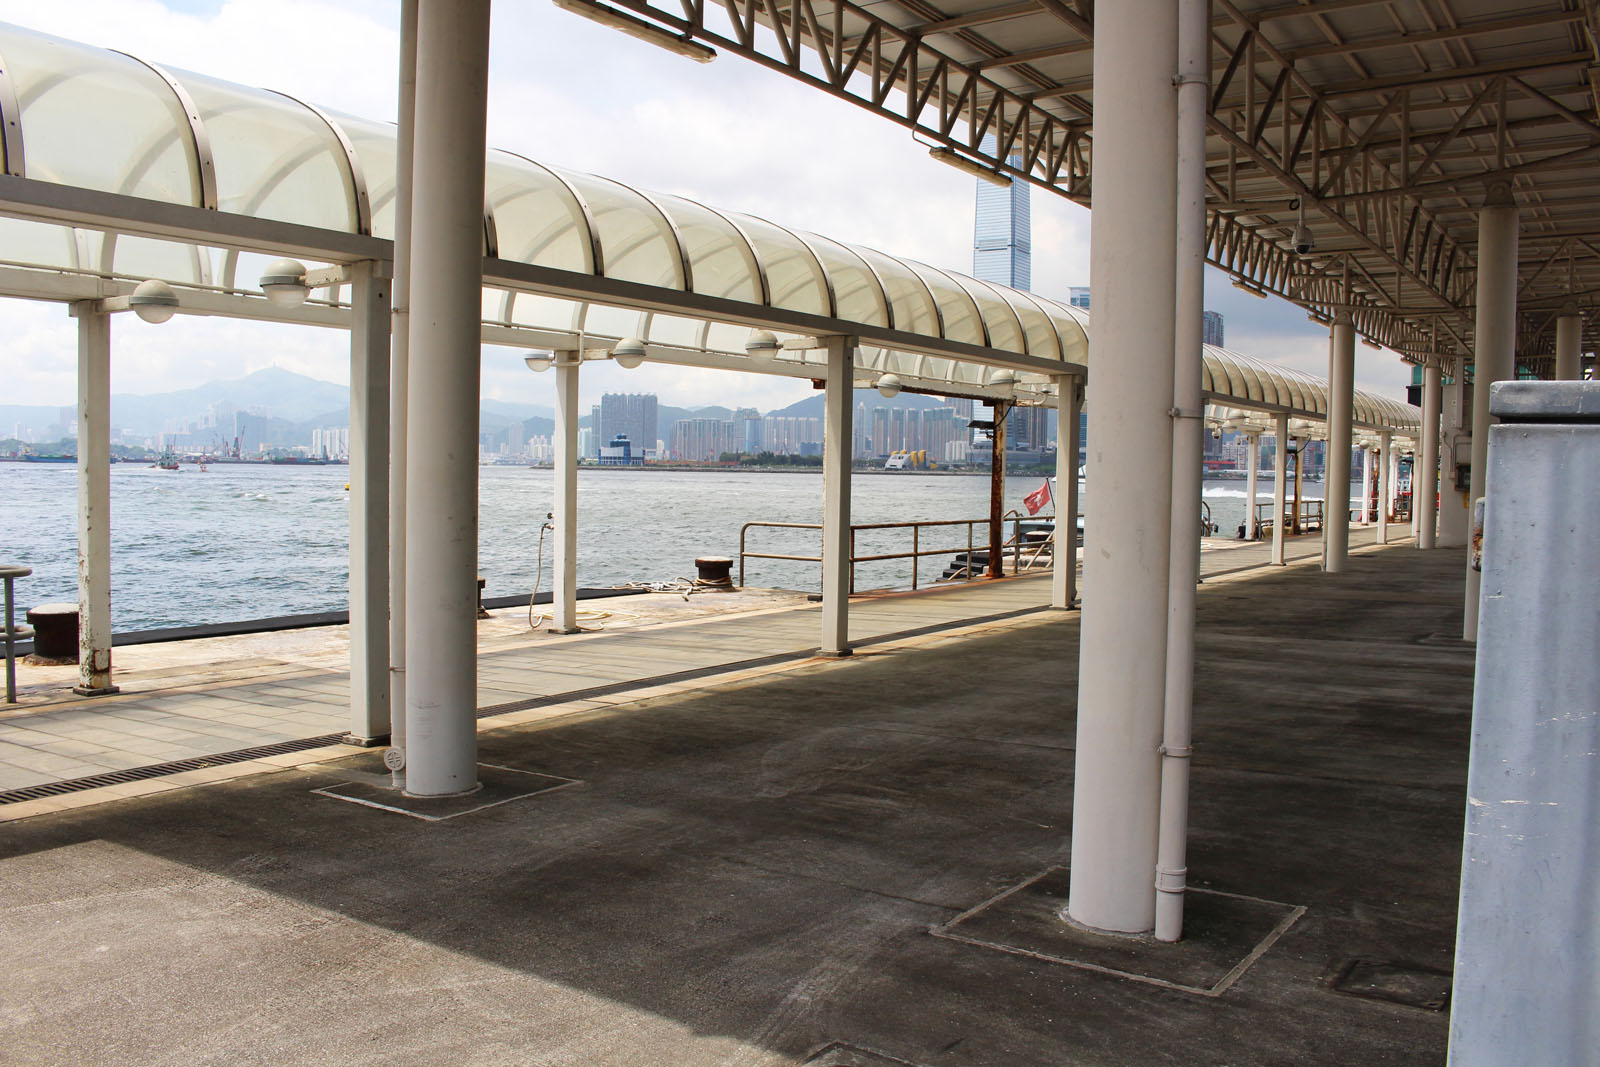 相片 3: 中區政府碼頭 – 香港海關泊位岸邊空地